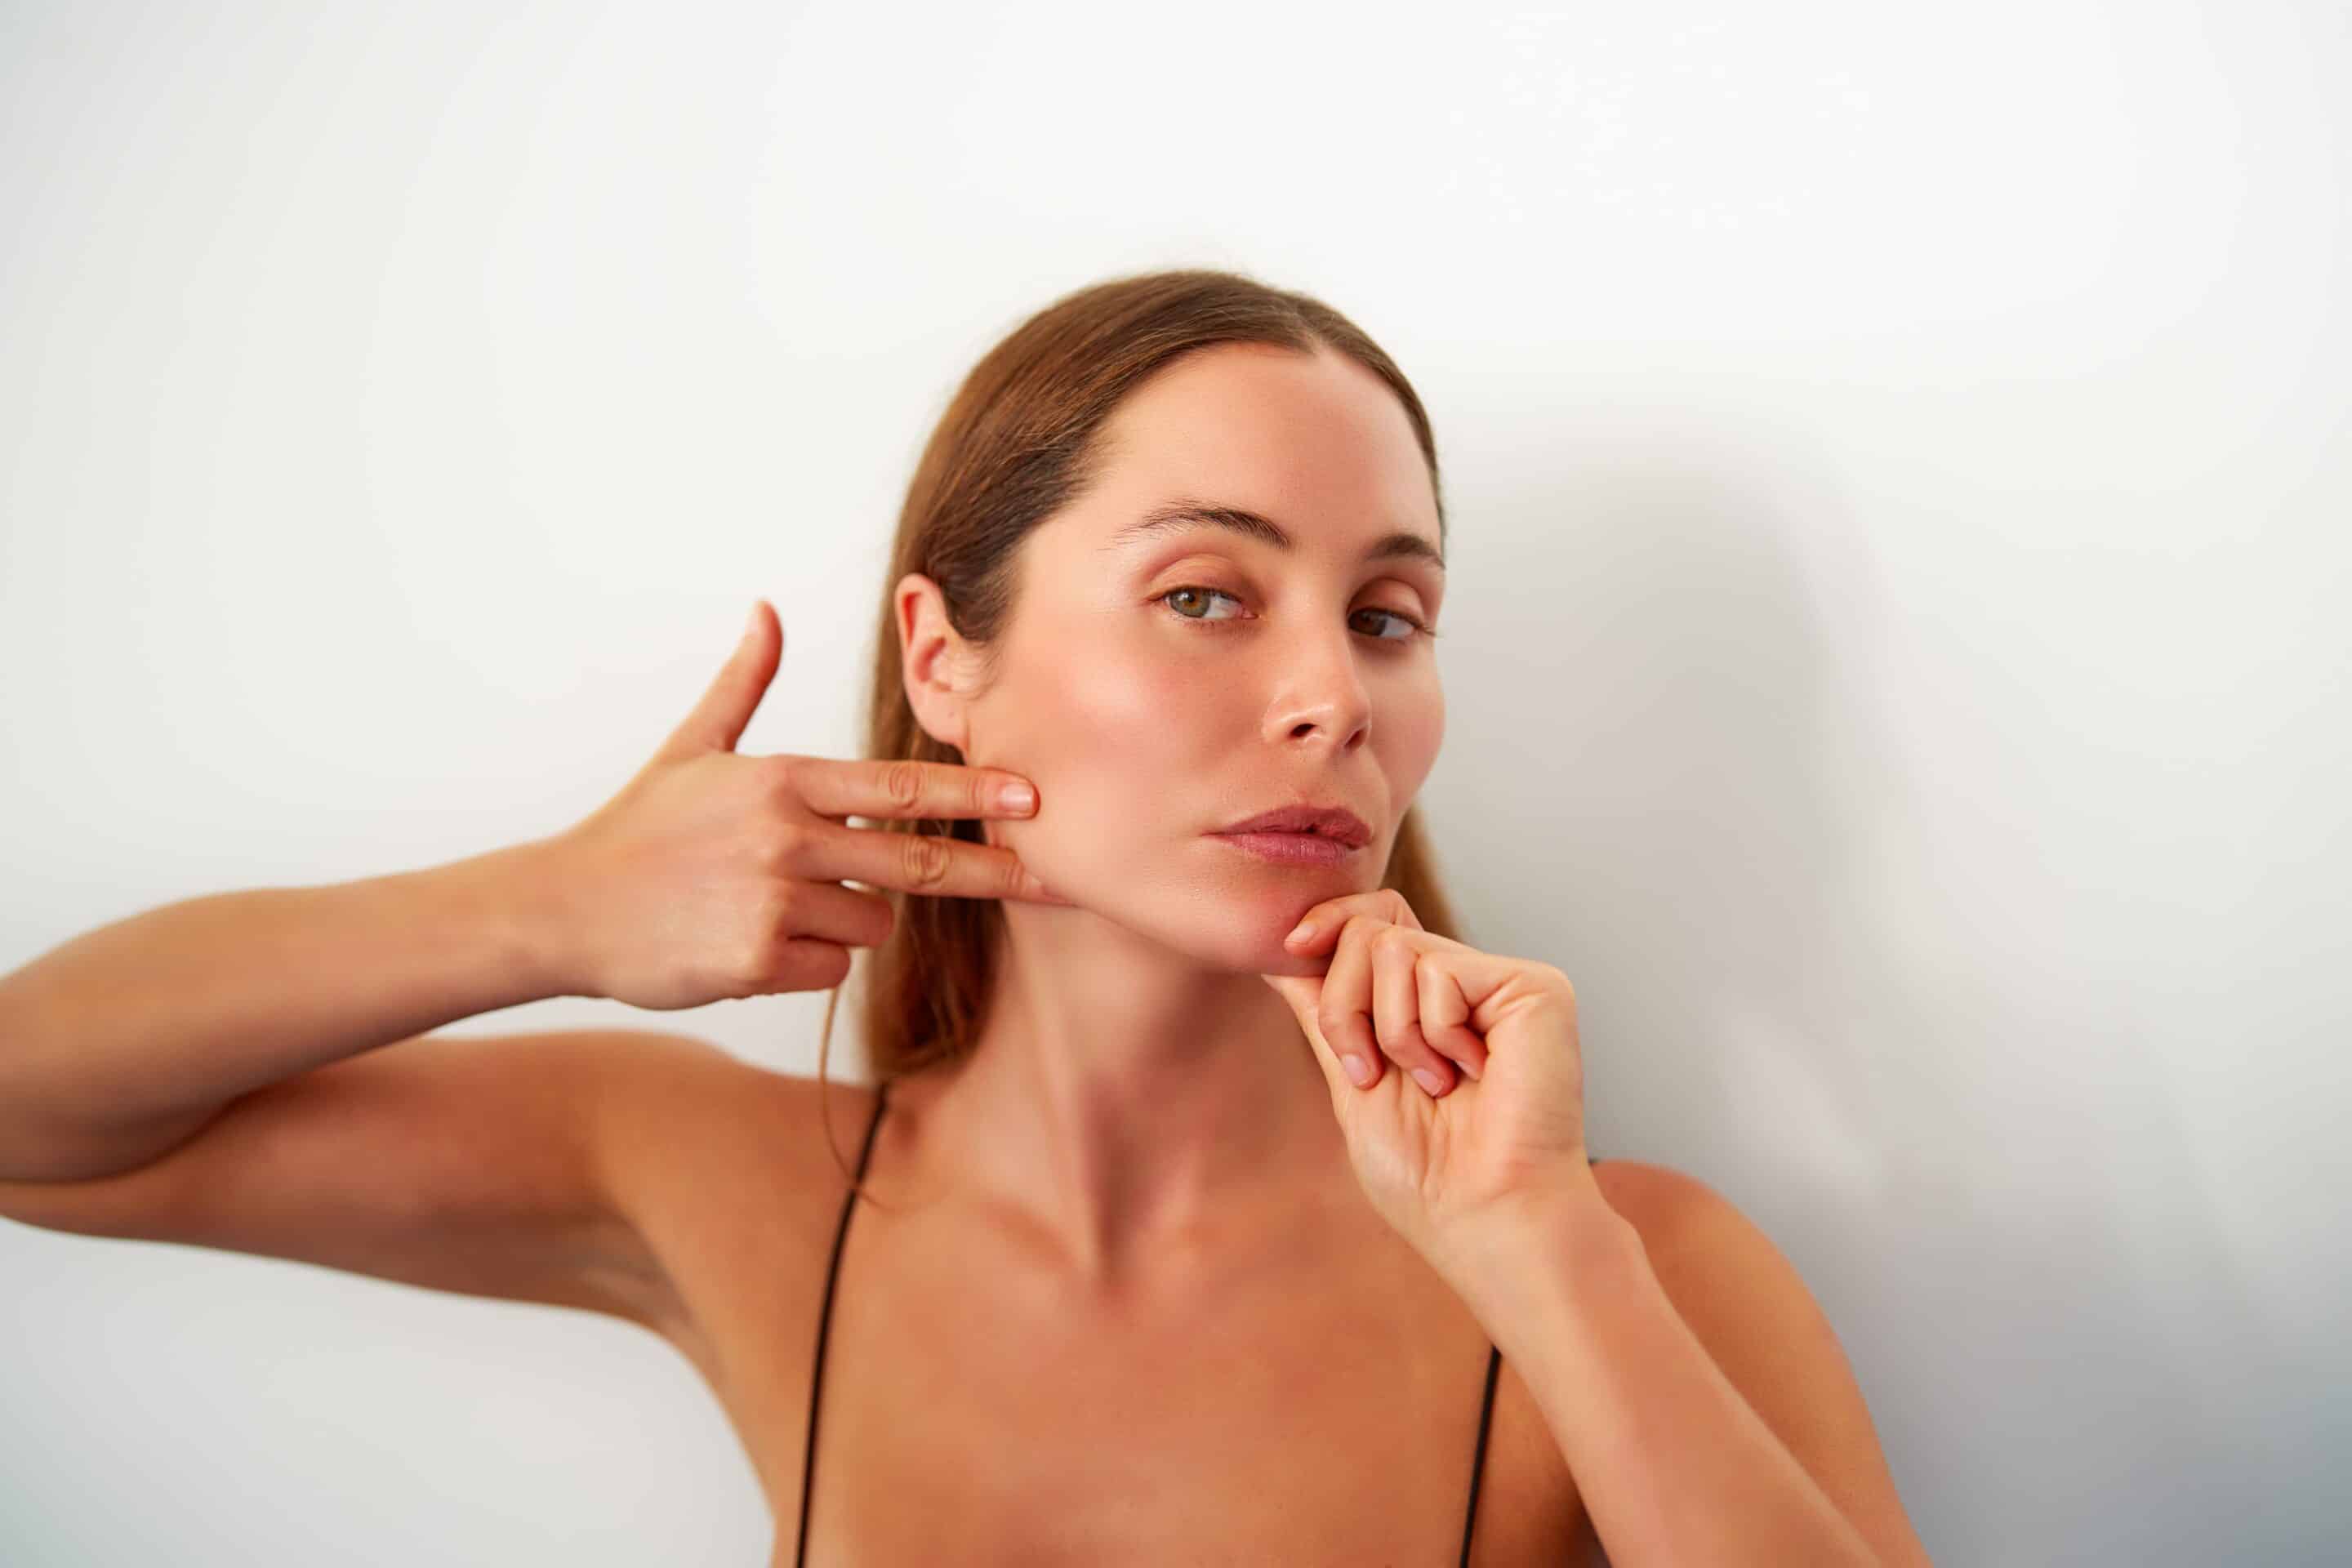 Gesichtsyoga - Die besten Übungen für straffe Haut und weniger Falten